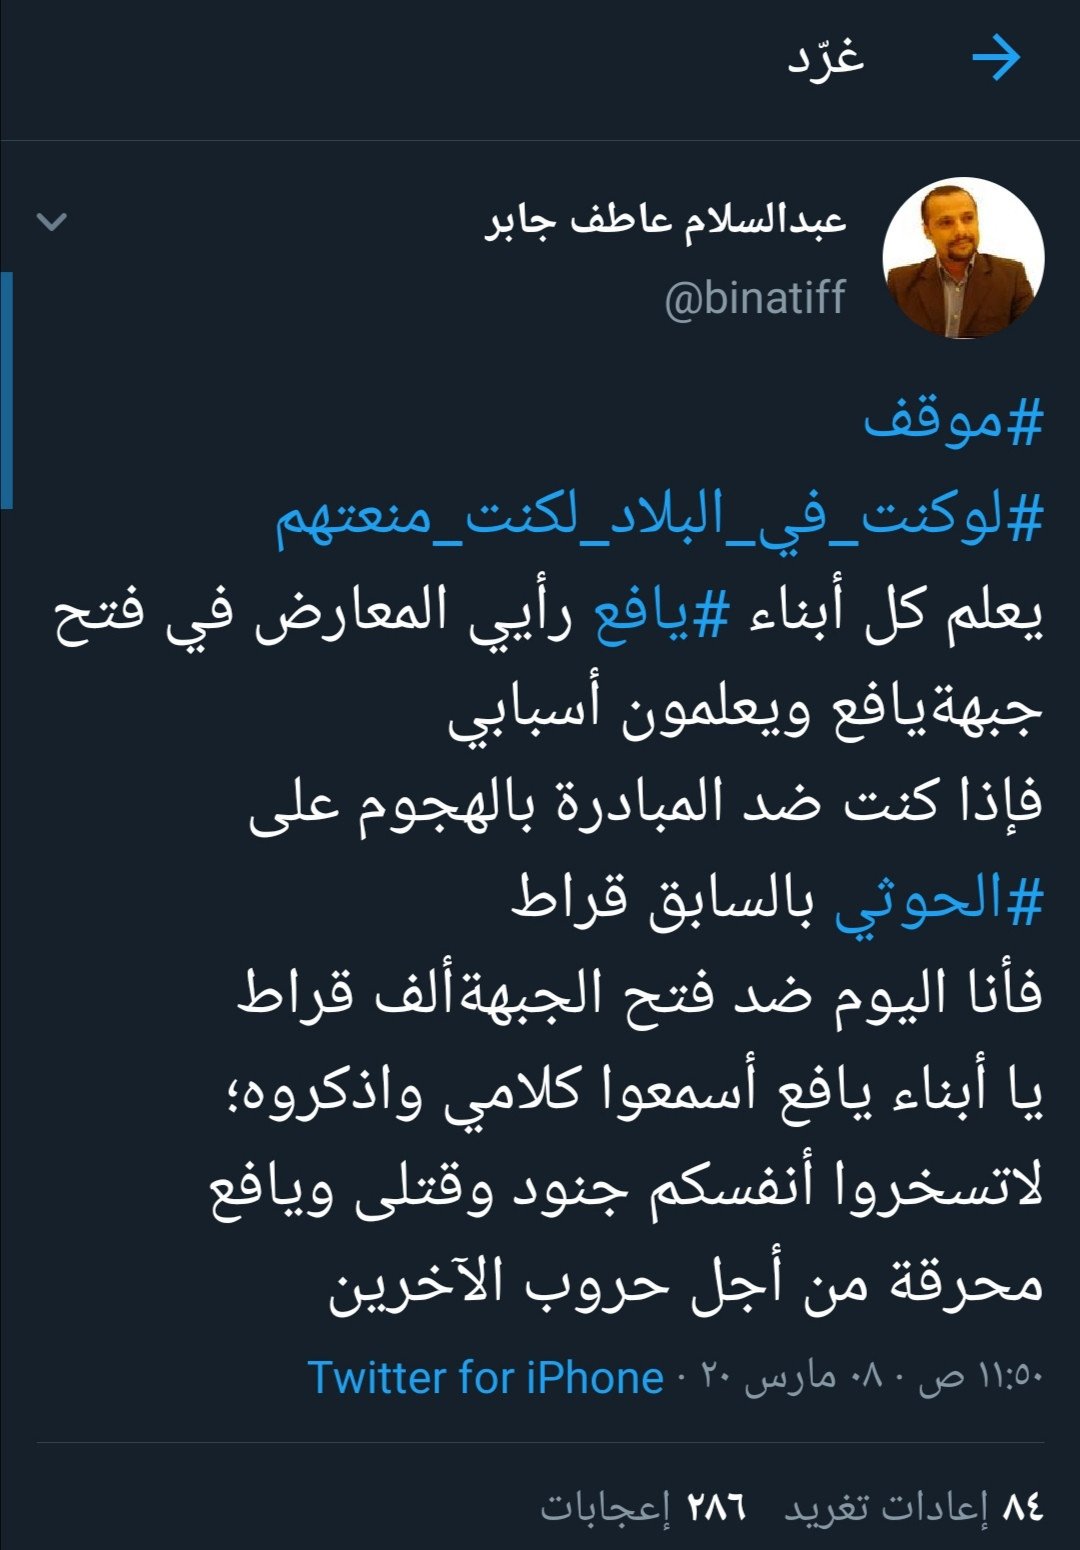 الشيخ عبدالسلام بن عاطف جابر يعلق حول فتح جبهة قتال في يافع